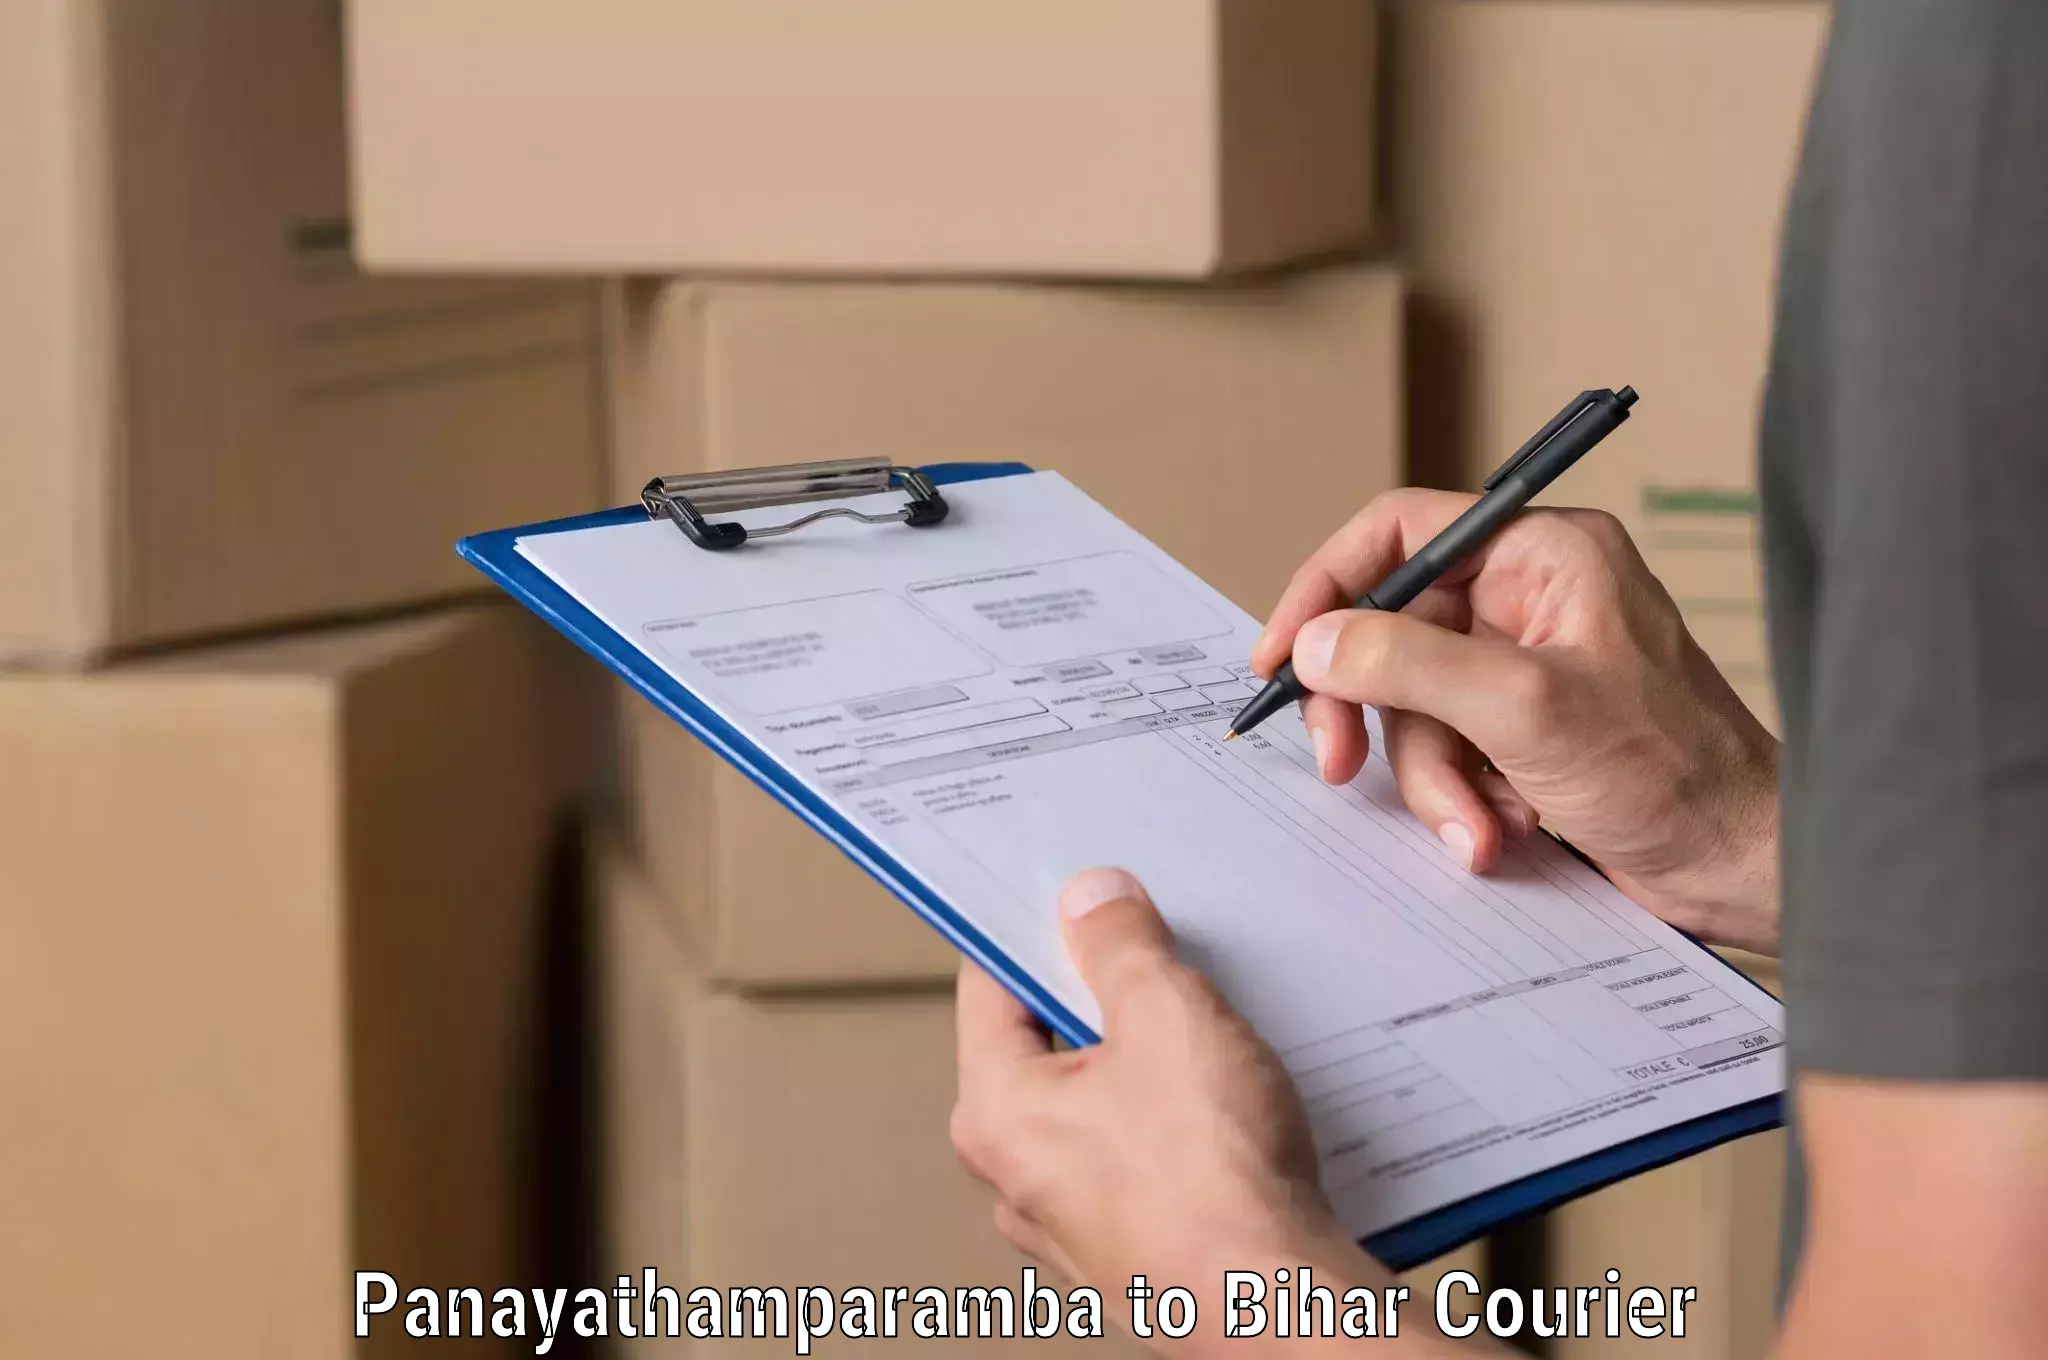 Trackable shipping service Panayathamparamba to West Champaran